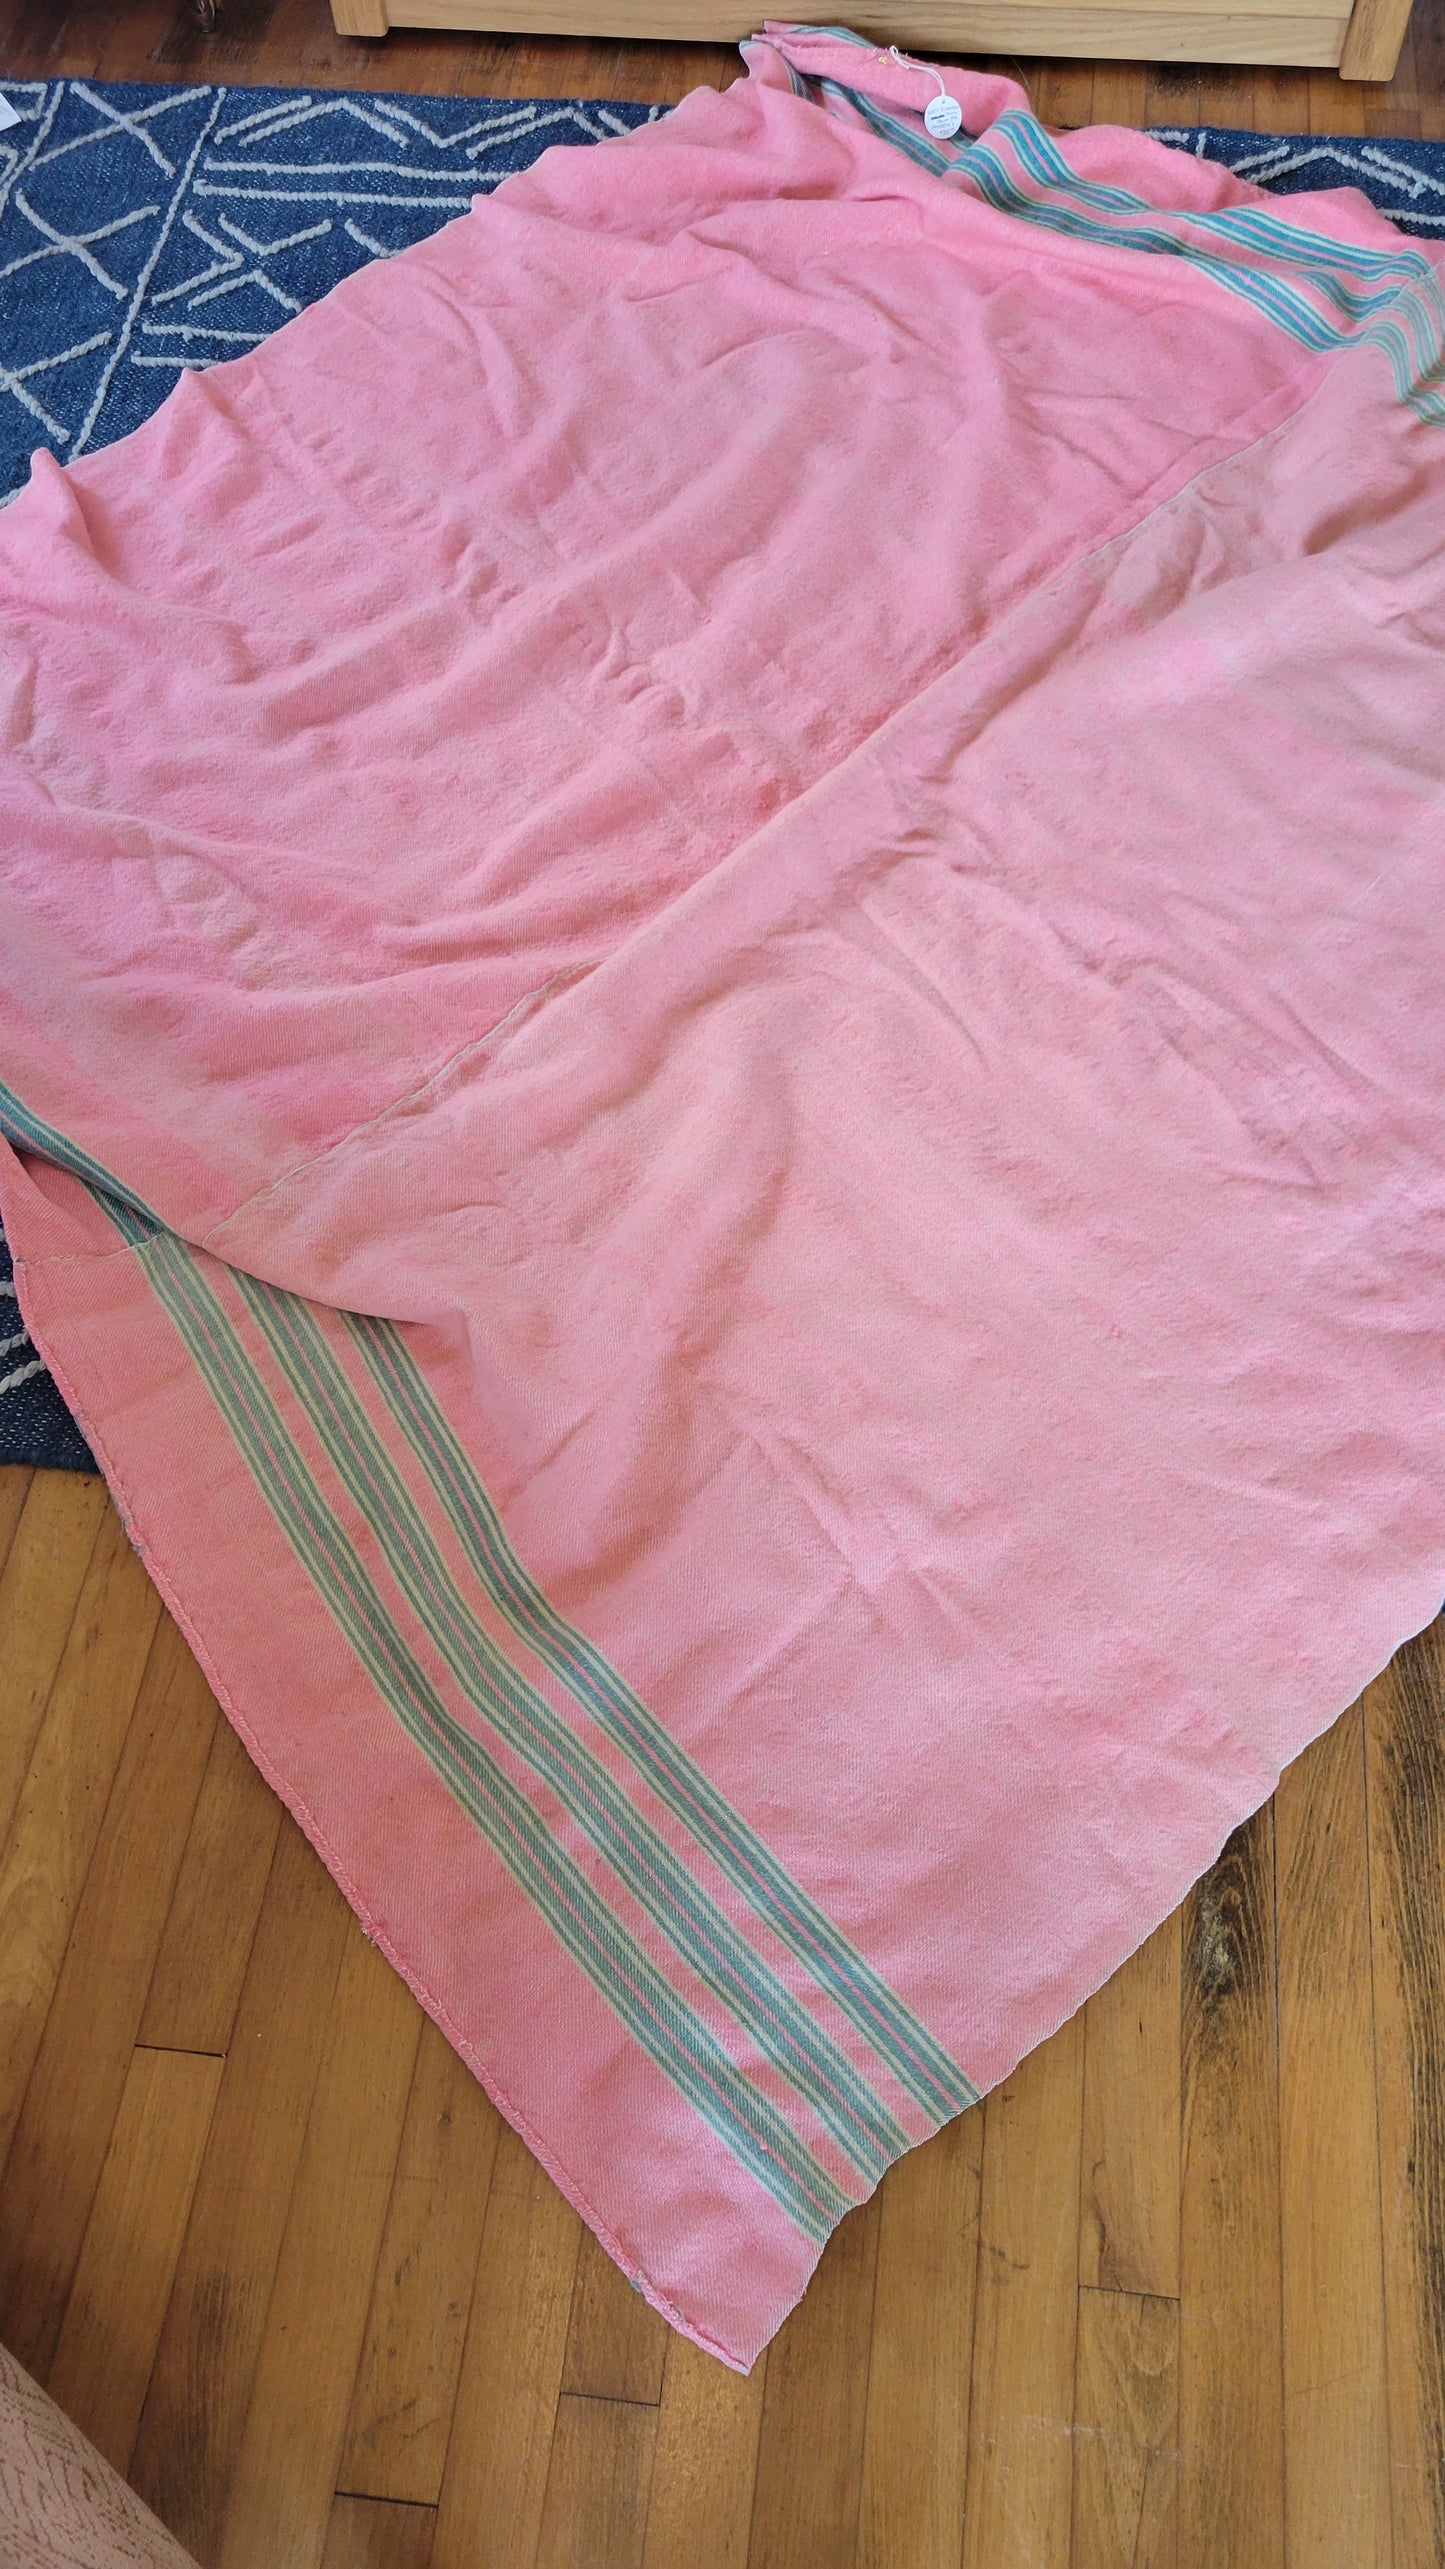 Blanket (2 blankets sewen together)